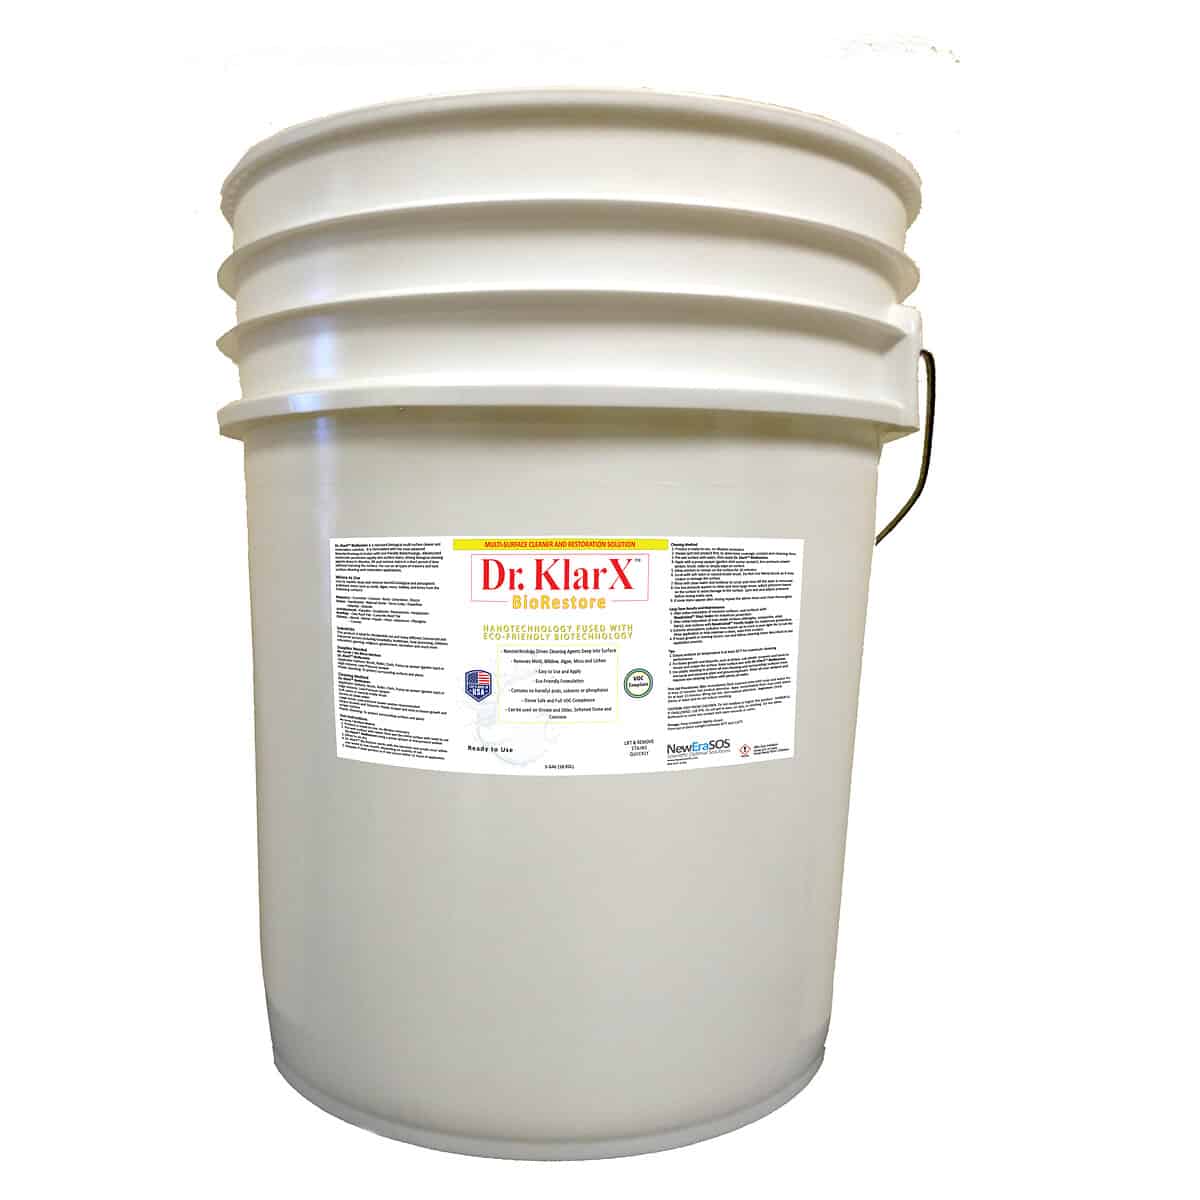 Dr KlarX BioRestore 5- Gallon Pail